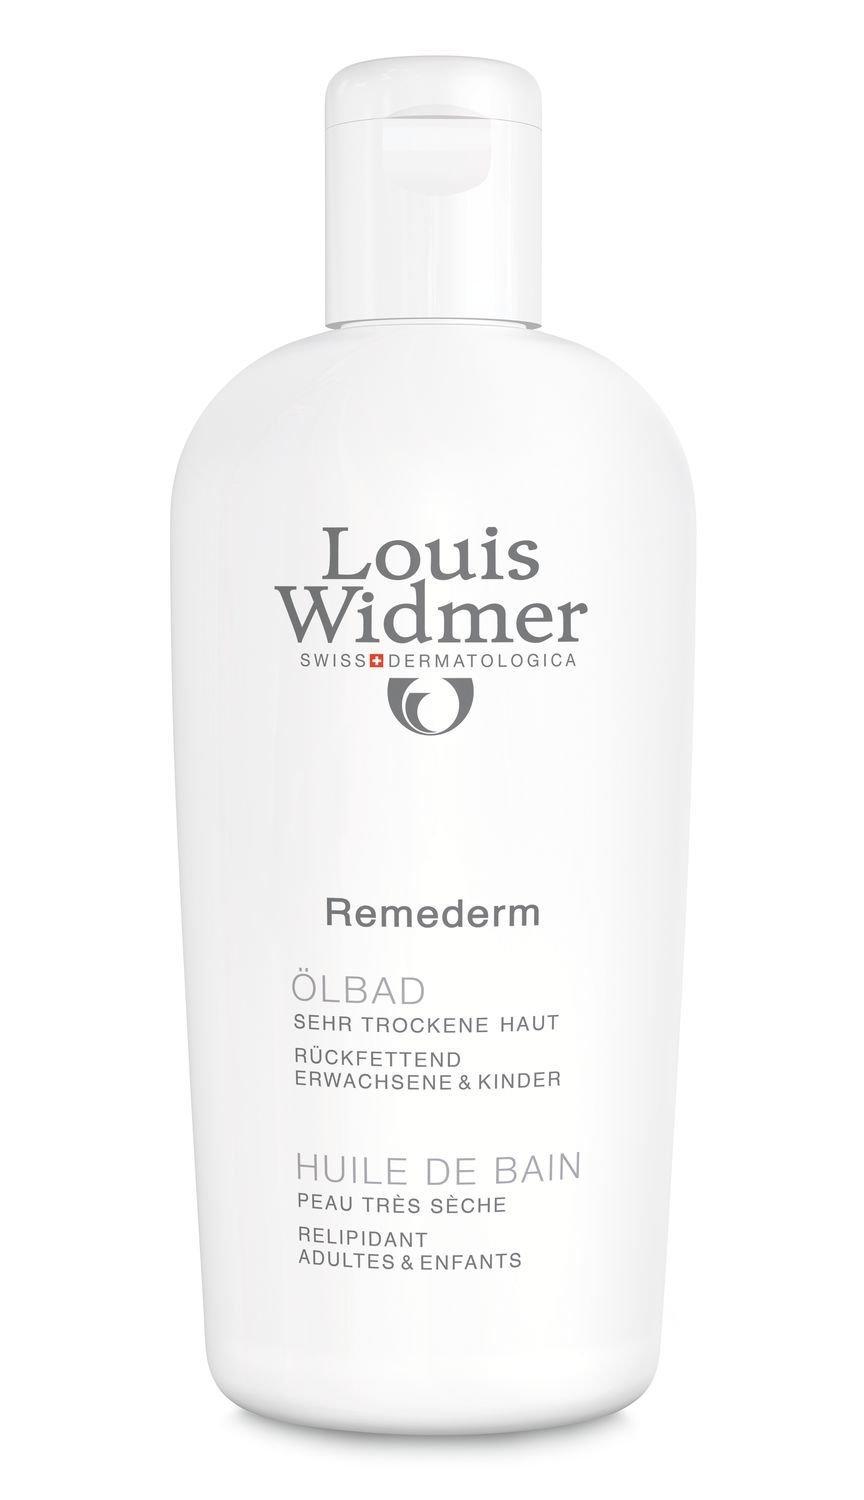 Louis Widmer Remederm Huile de Bain parf Remederm Huile de Bain parfumé 